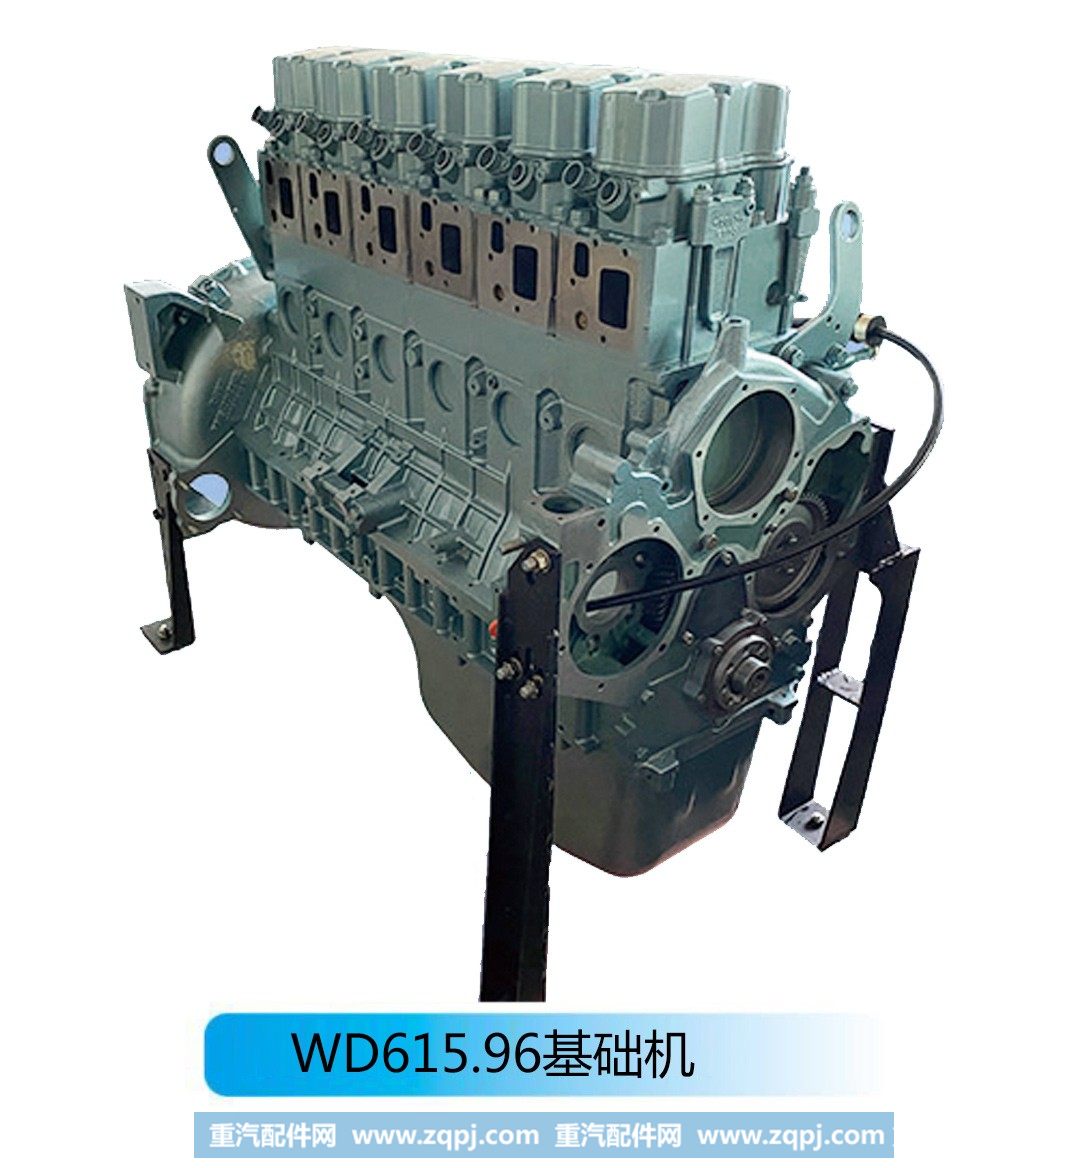 再制造基础机-WD615.96基础机【法泽尔发动机】/